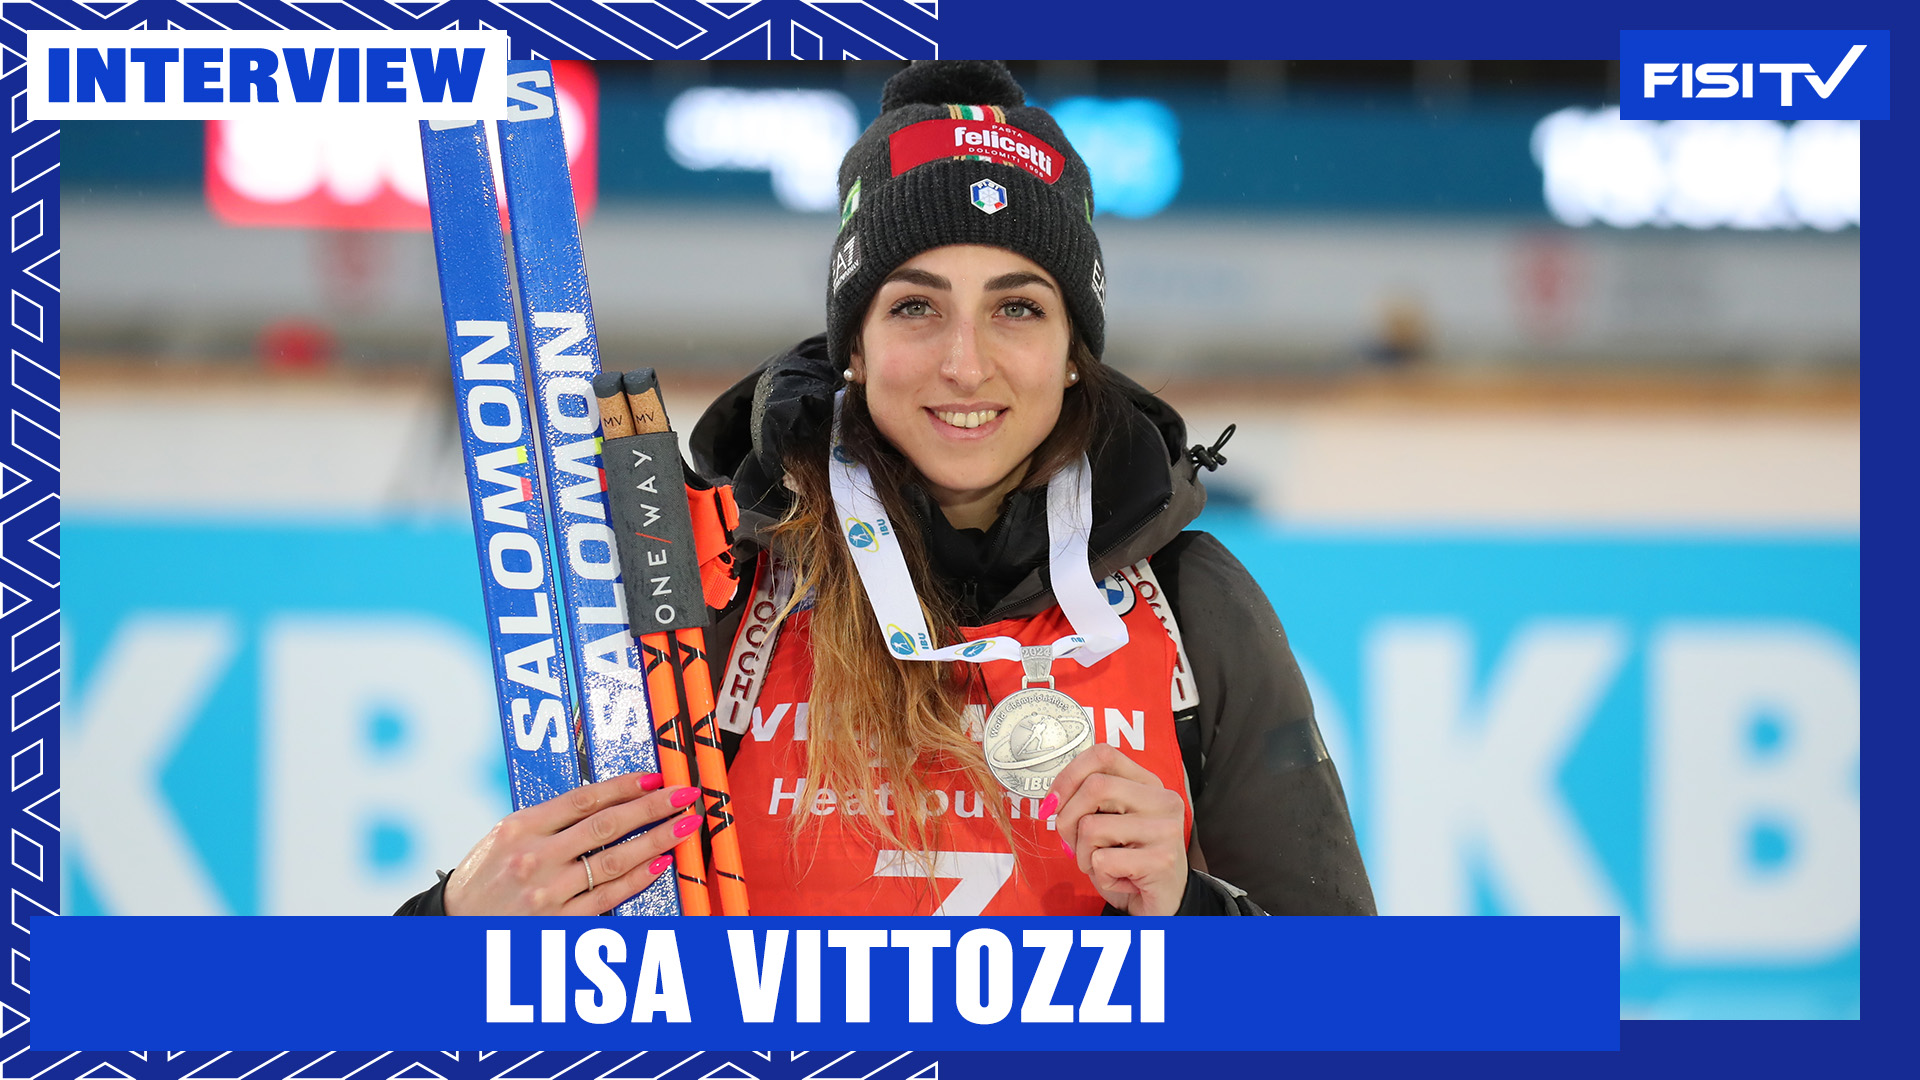 Lisa Vittozzi | “Avevo voglia di rivincita, un argento che vale tanto” | FISI TV